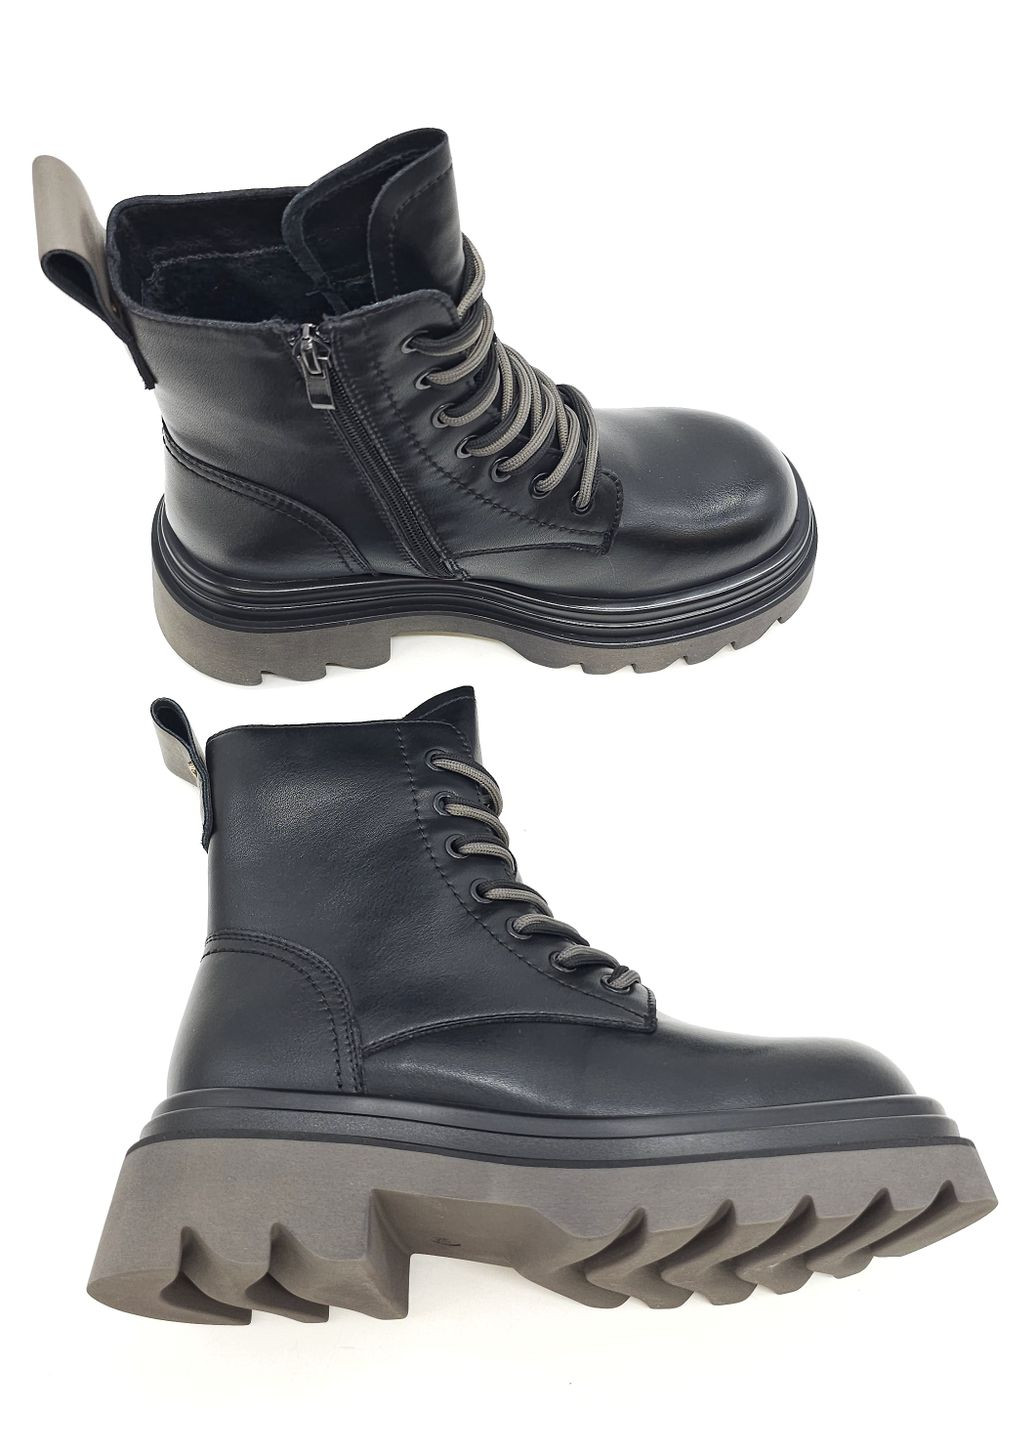 Осенние женские ботинки черные кожаные l-13-9 23 см (р) Lonza